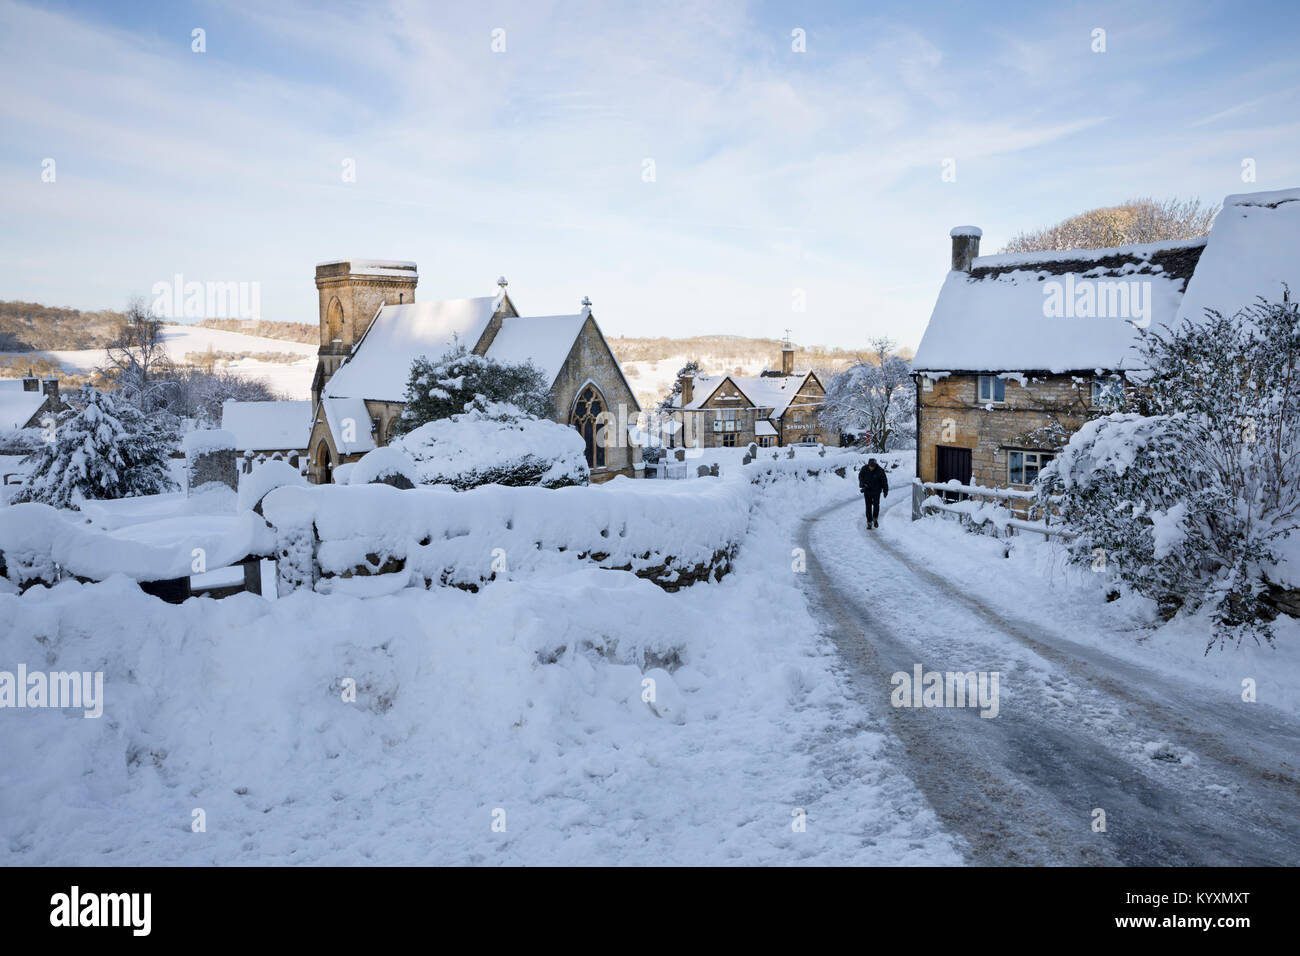 San Barnaba Chiesa e villaggio Costwold in inverno la neve, Snowshill, Cotswolds, Gloucestershire, England, Regno Unito, Europa Foto Stock